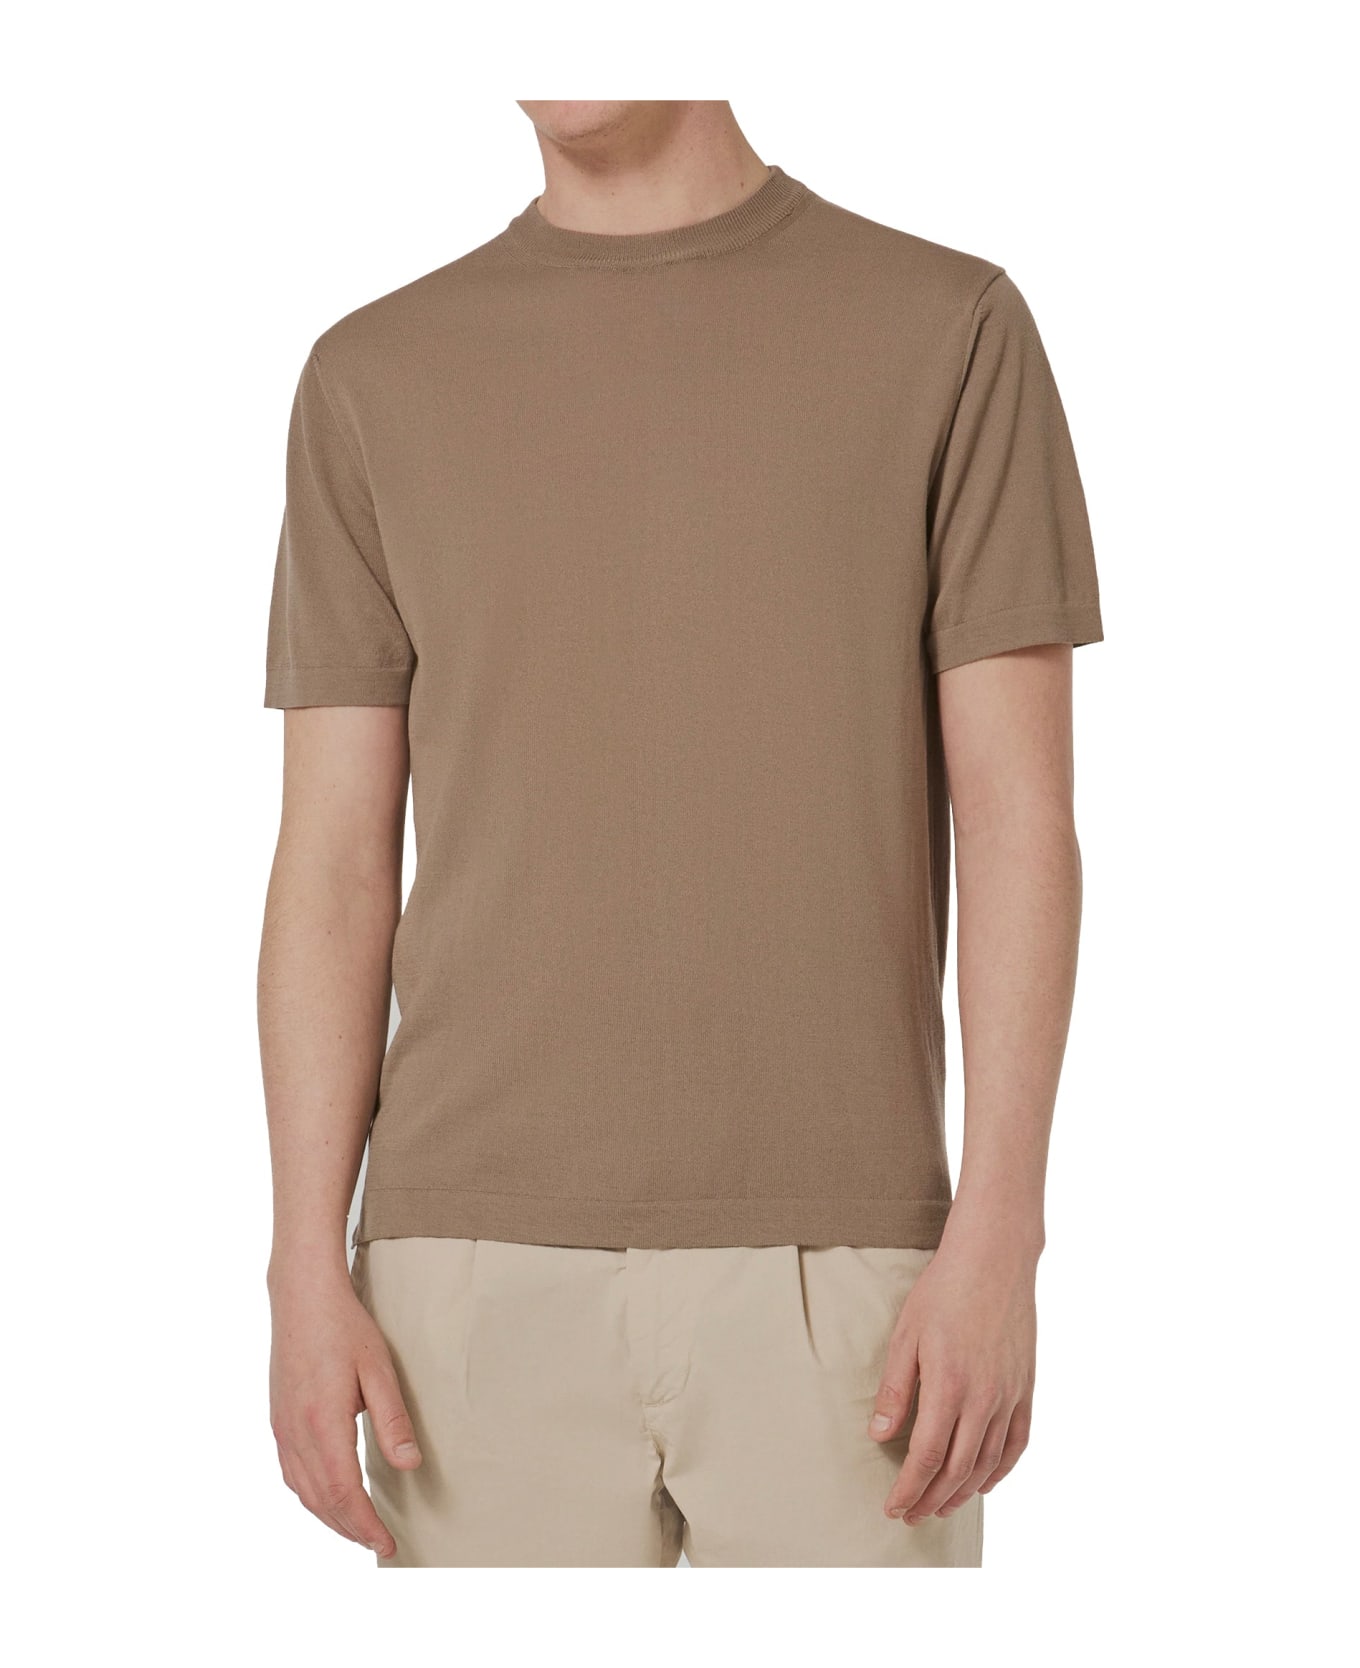 Cruna Cotton T-shirt - Beige